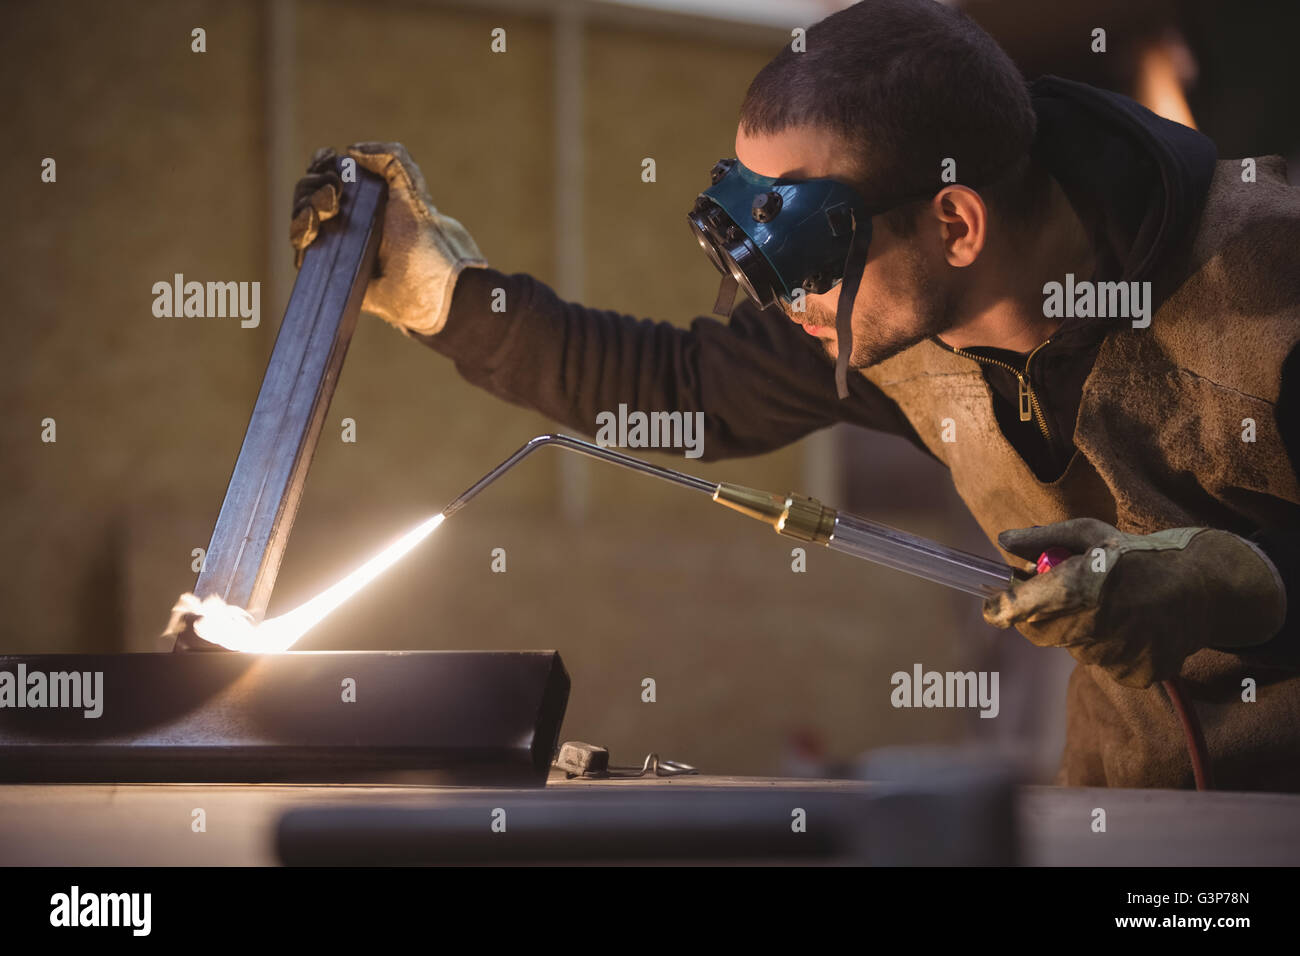 Welder welding a metal Stock Photo